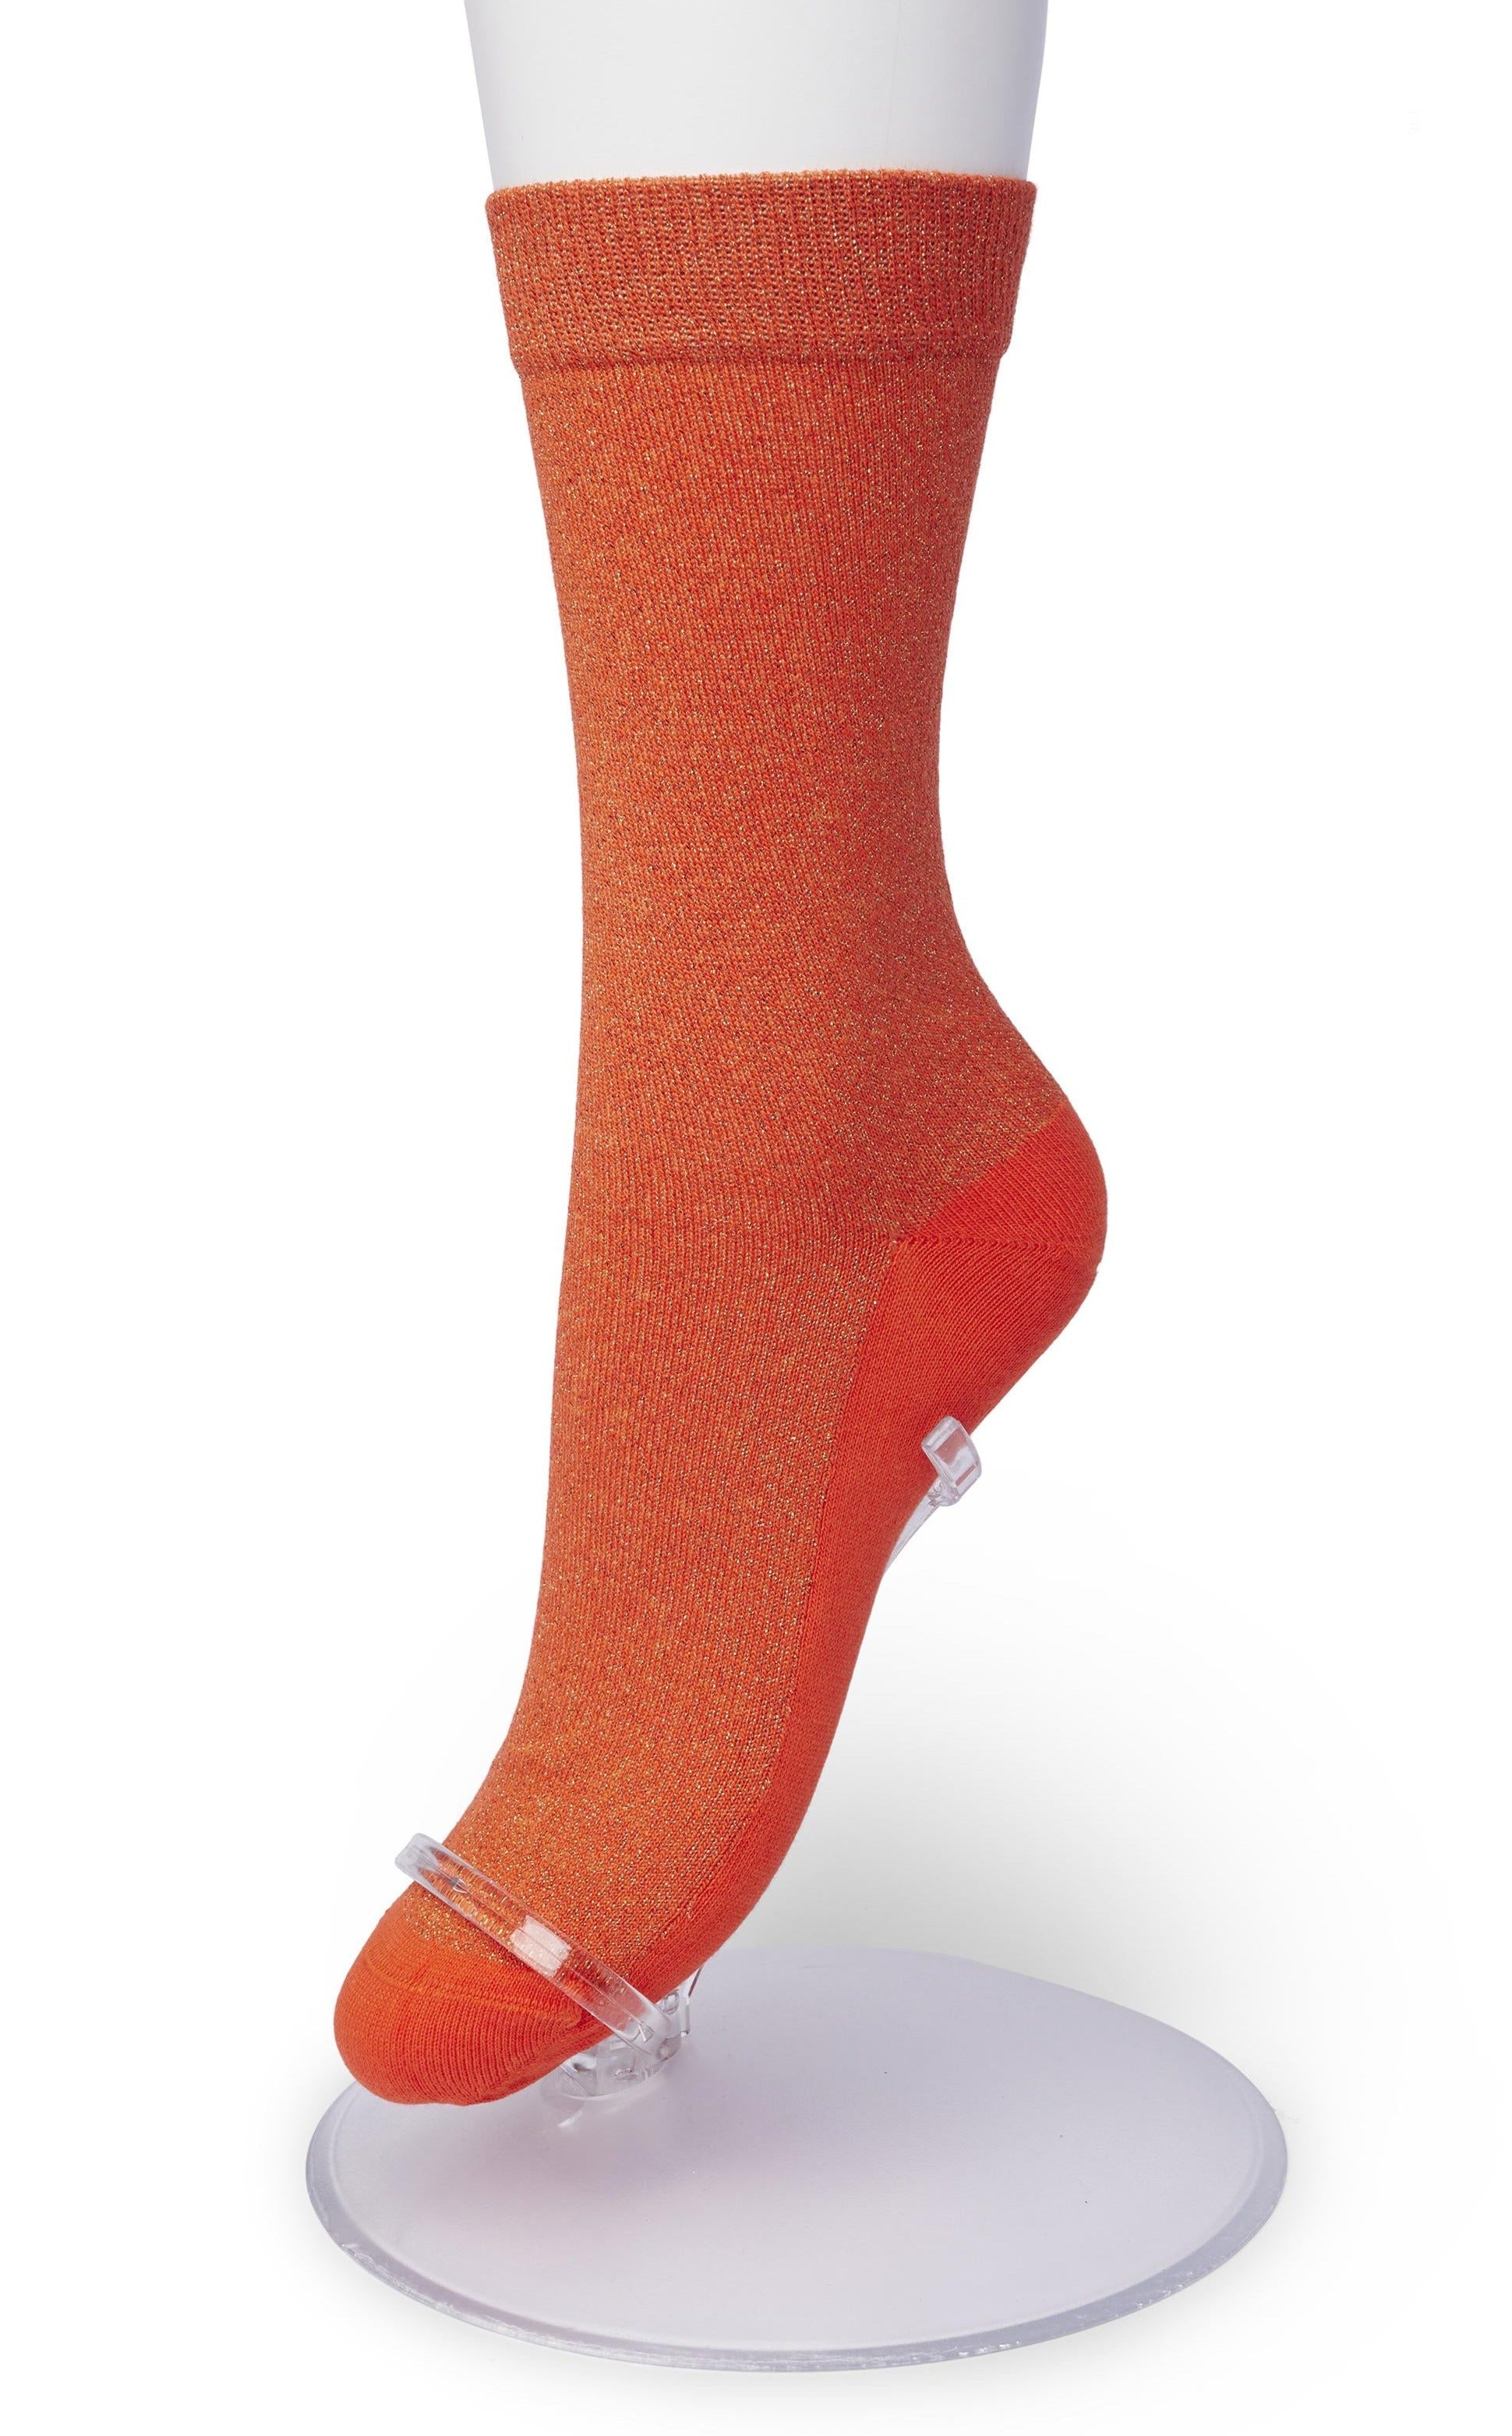 Bonnie Doon BP051138 Cotton Sparkle Socks - orange socks with sparkly glitter lam̩ lurex